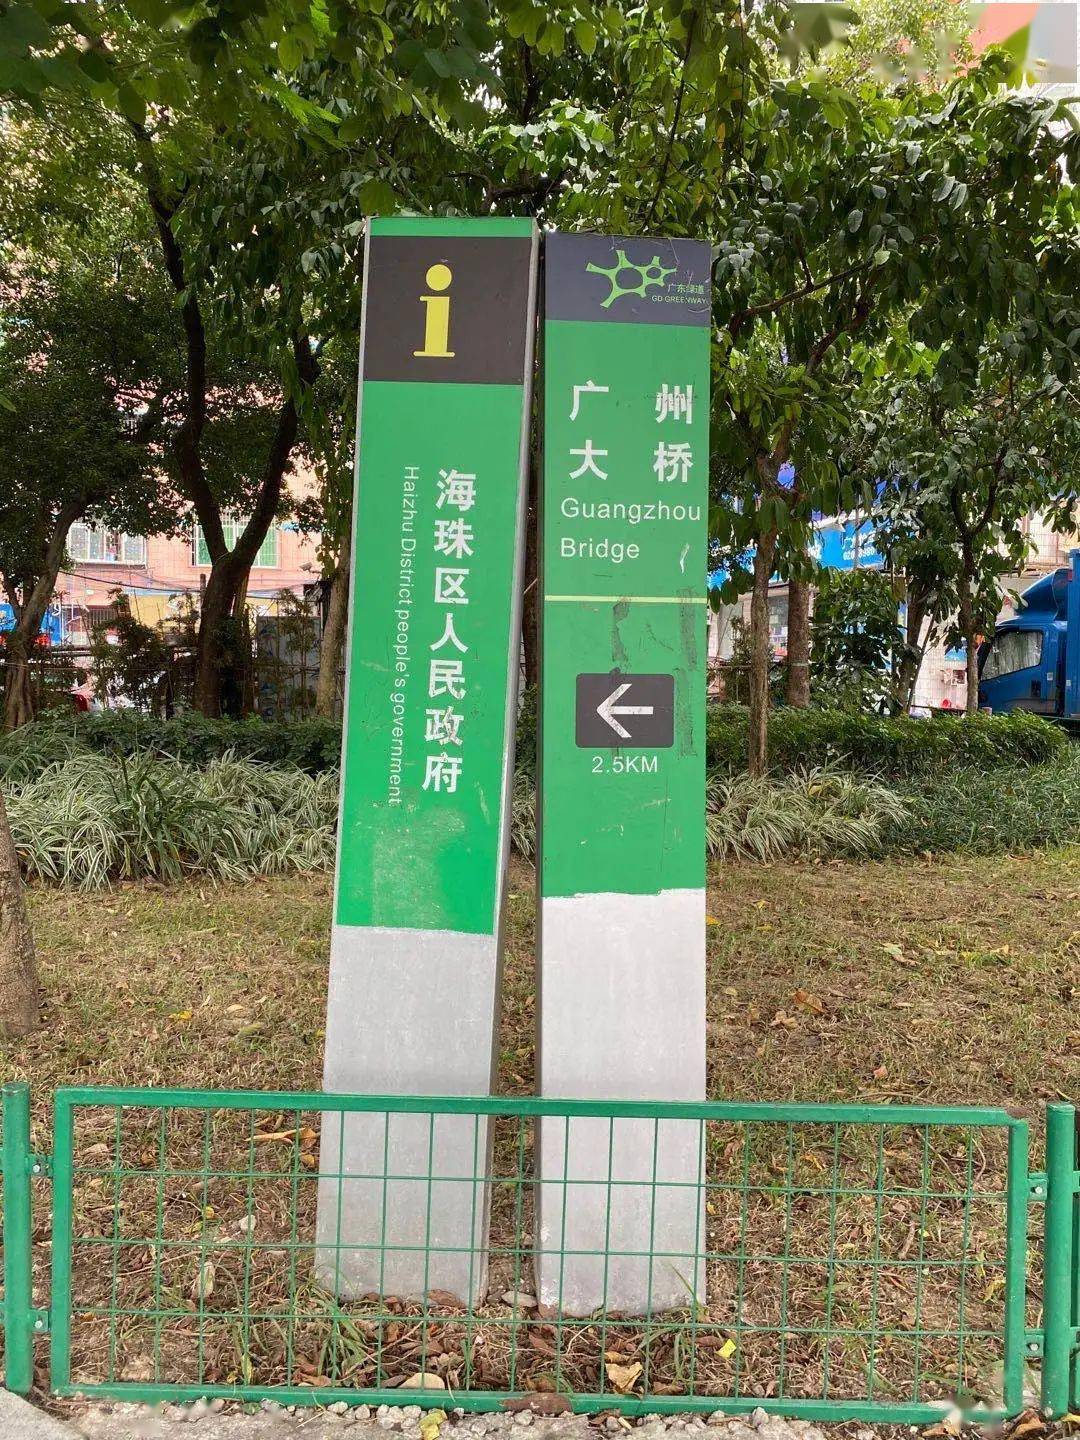 广州的耀文路路牌图片